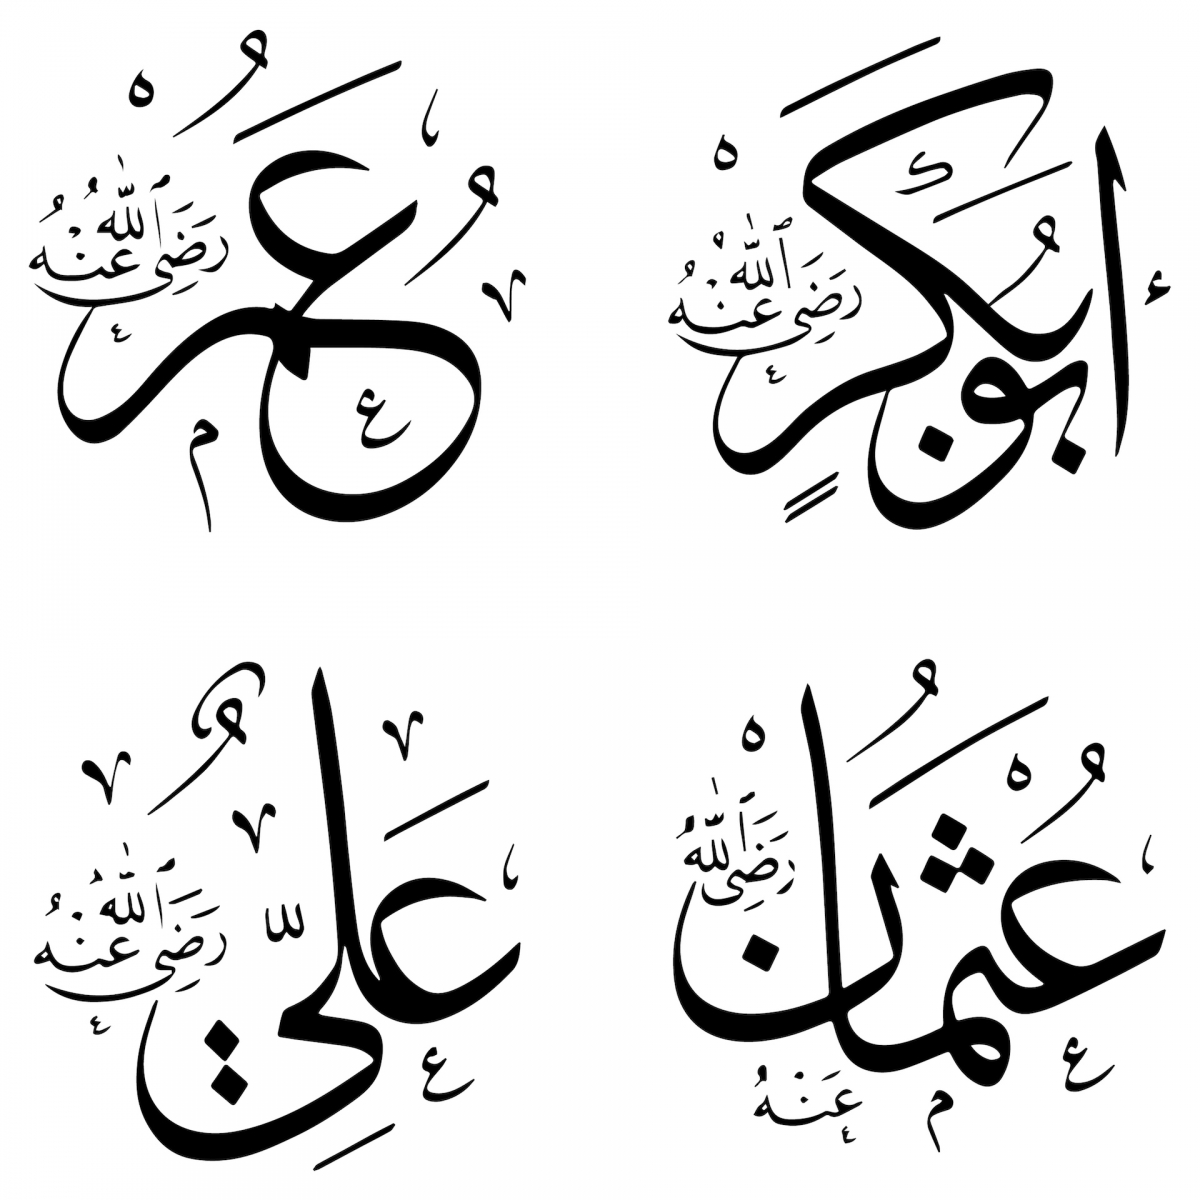 I nomi dei califfi Rashidun nell'iscrizione islamica.  Ebu Bekir, Omer, Osman e Ali.  Le targhette con il nome di 4 califfi rashidun decorano tutti gli edifici religiosi nel mondo islamico